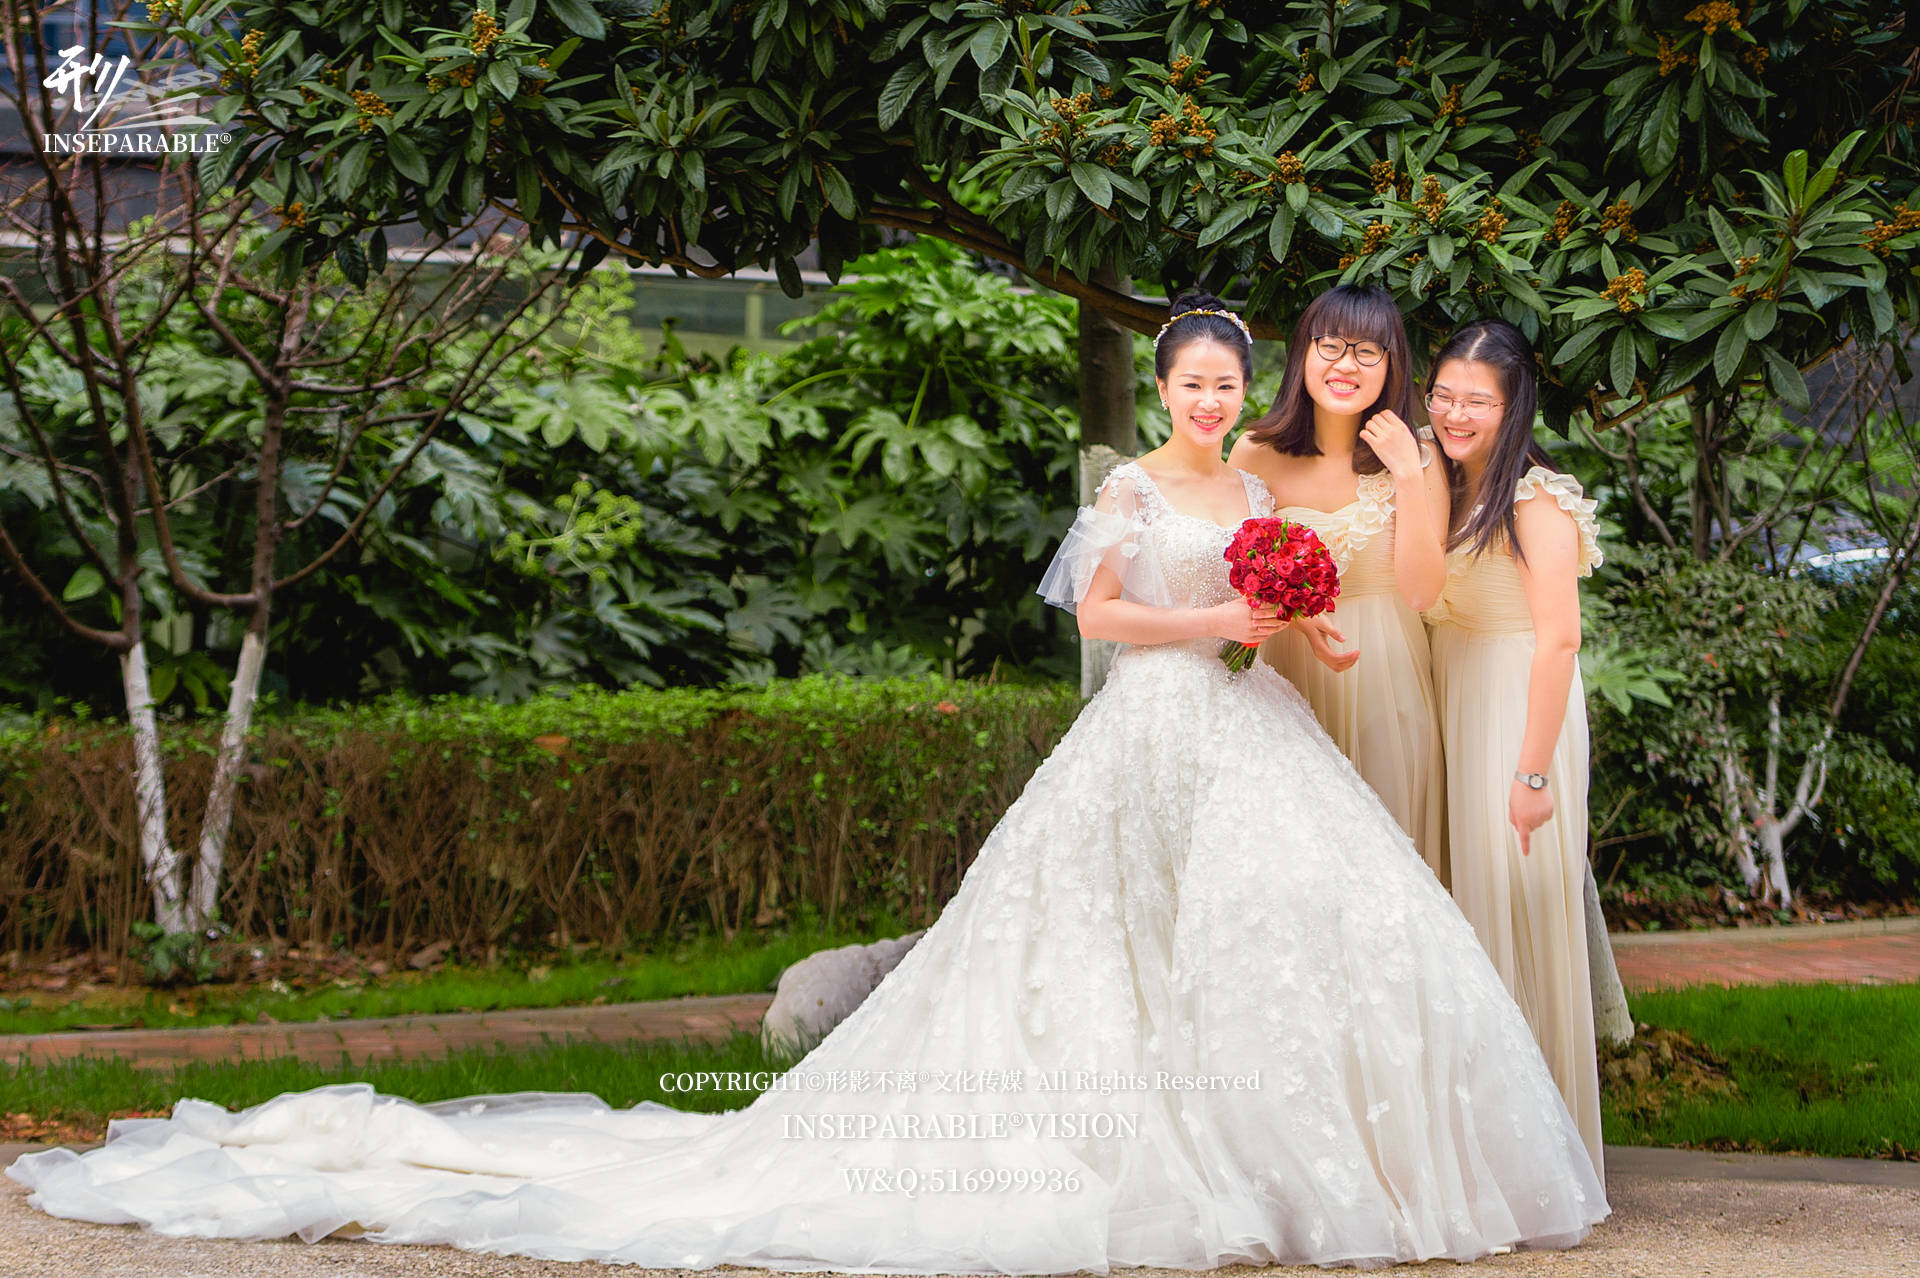 婚礼摄影是应该摆拍还是抓拍?无锡江阴宜兴常州苏州婚礼摄影摄像